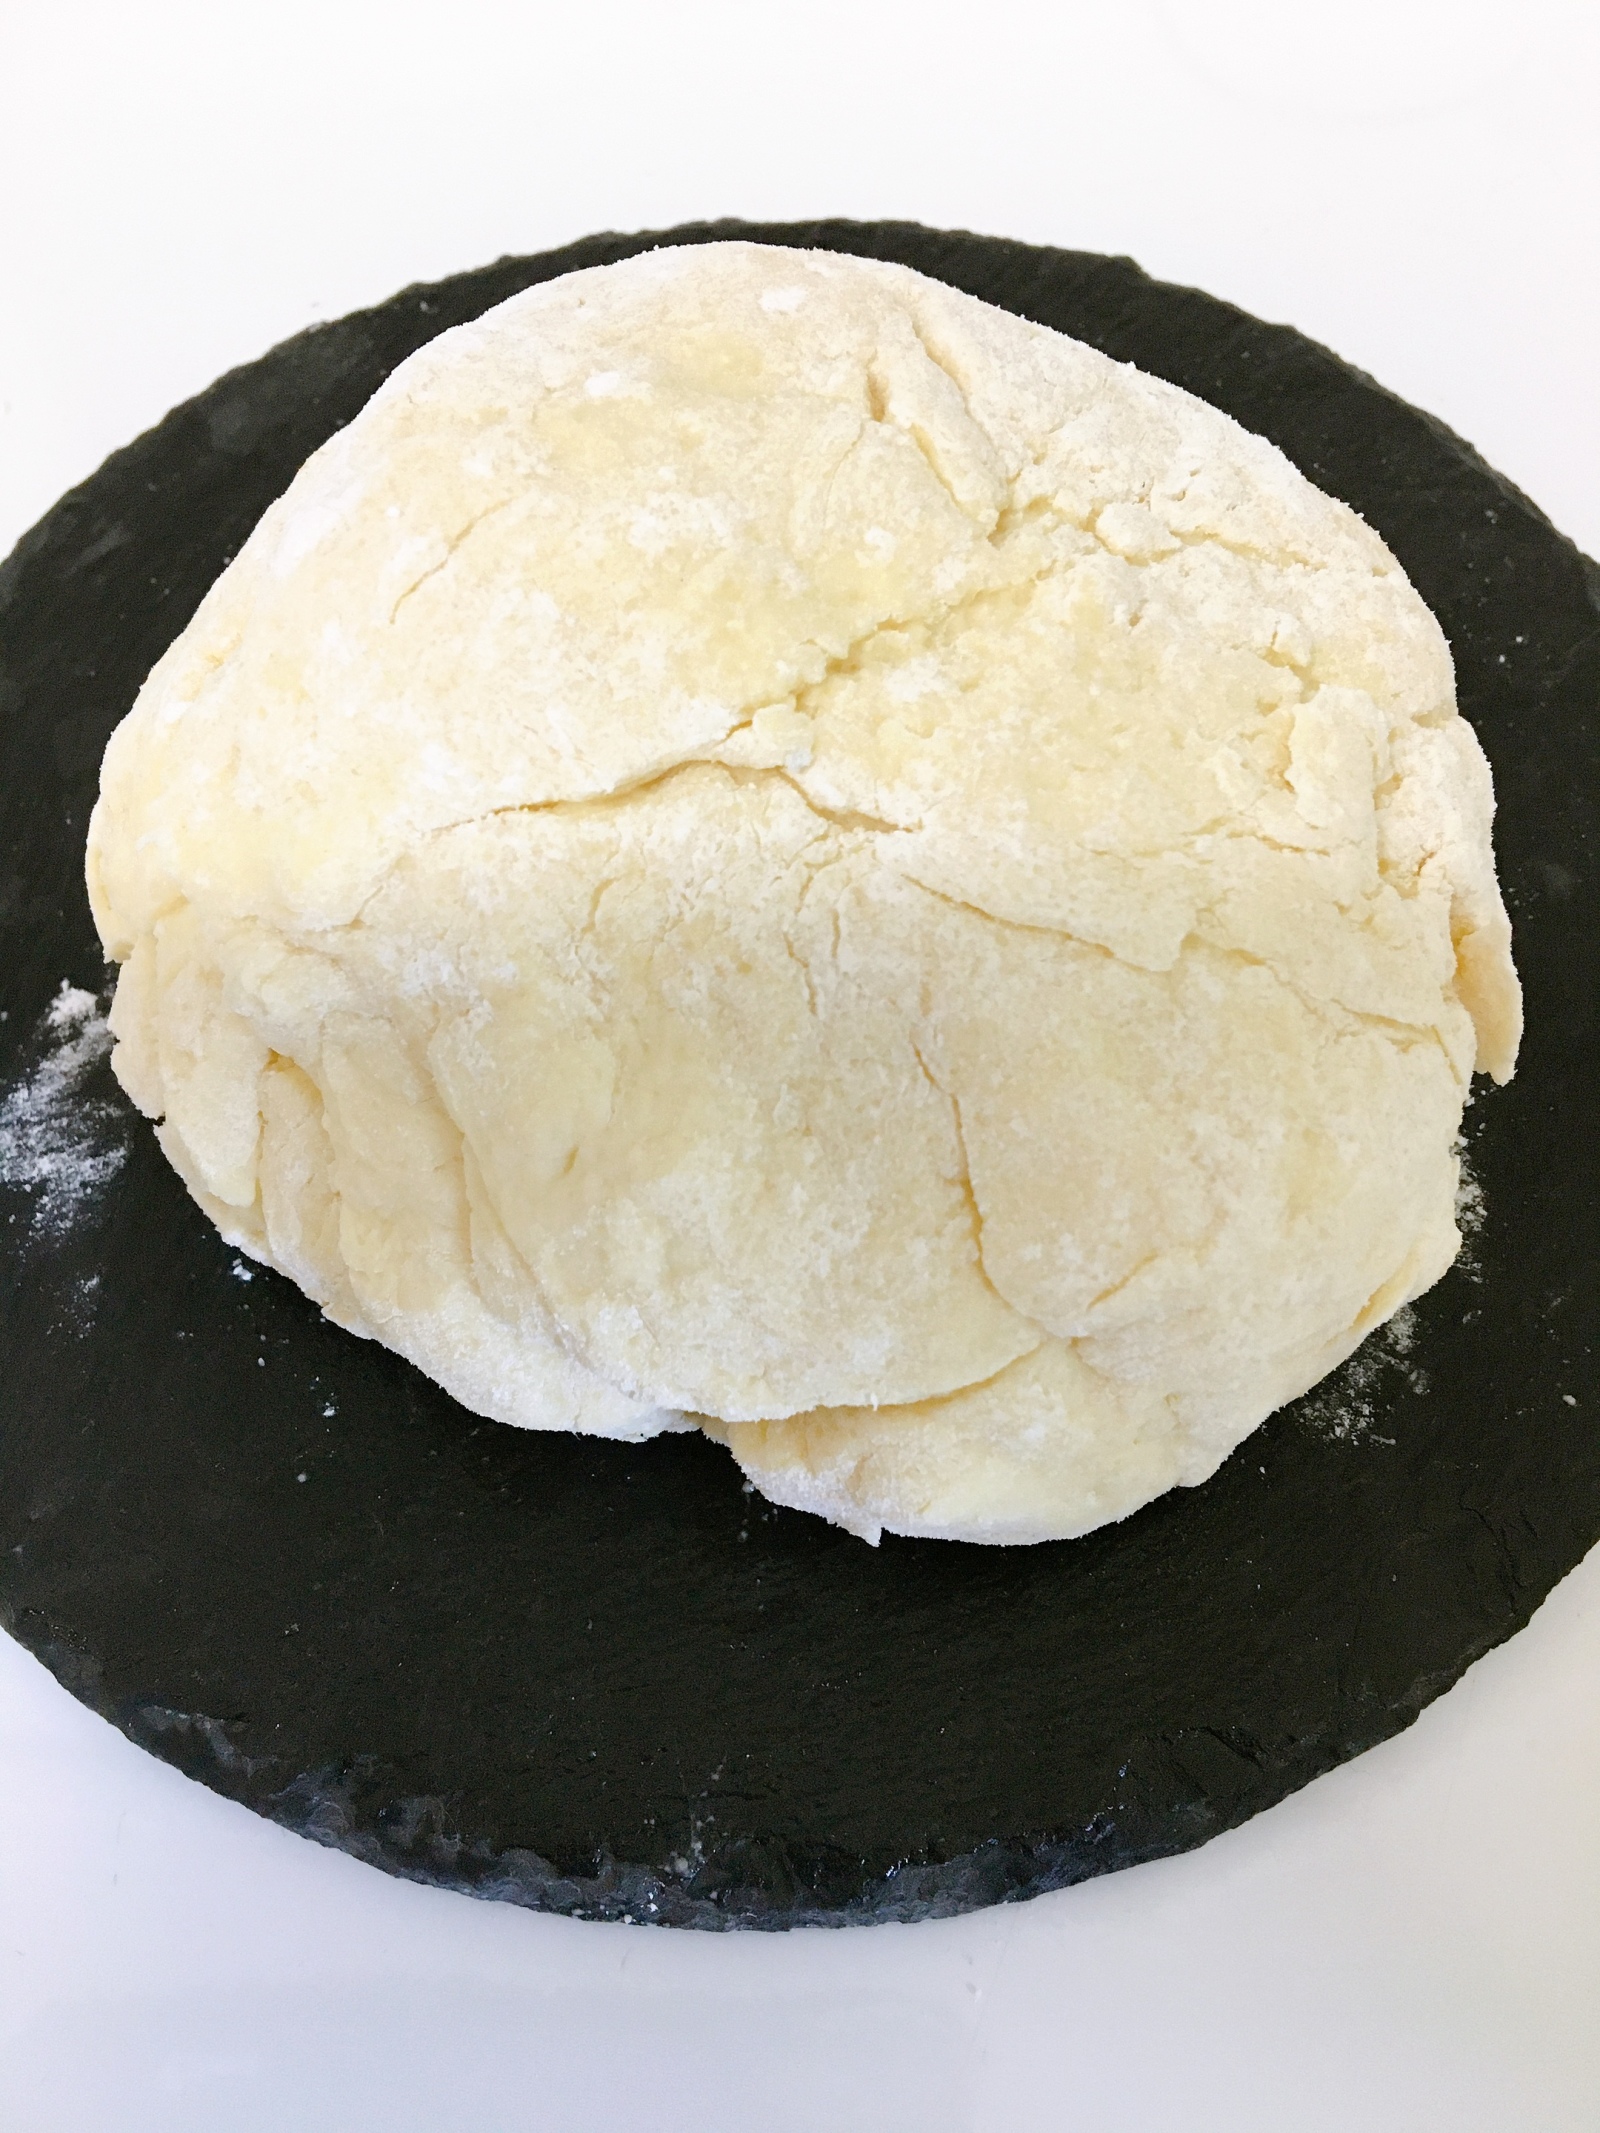 はじめてでも失敗知らず 発酵なし 時短 簡単 フライパンで作る手作りパン